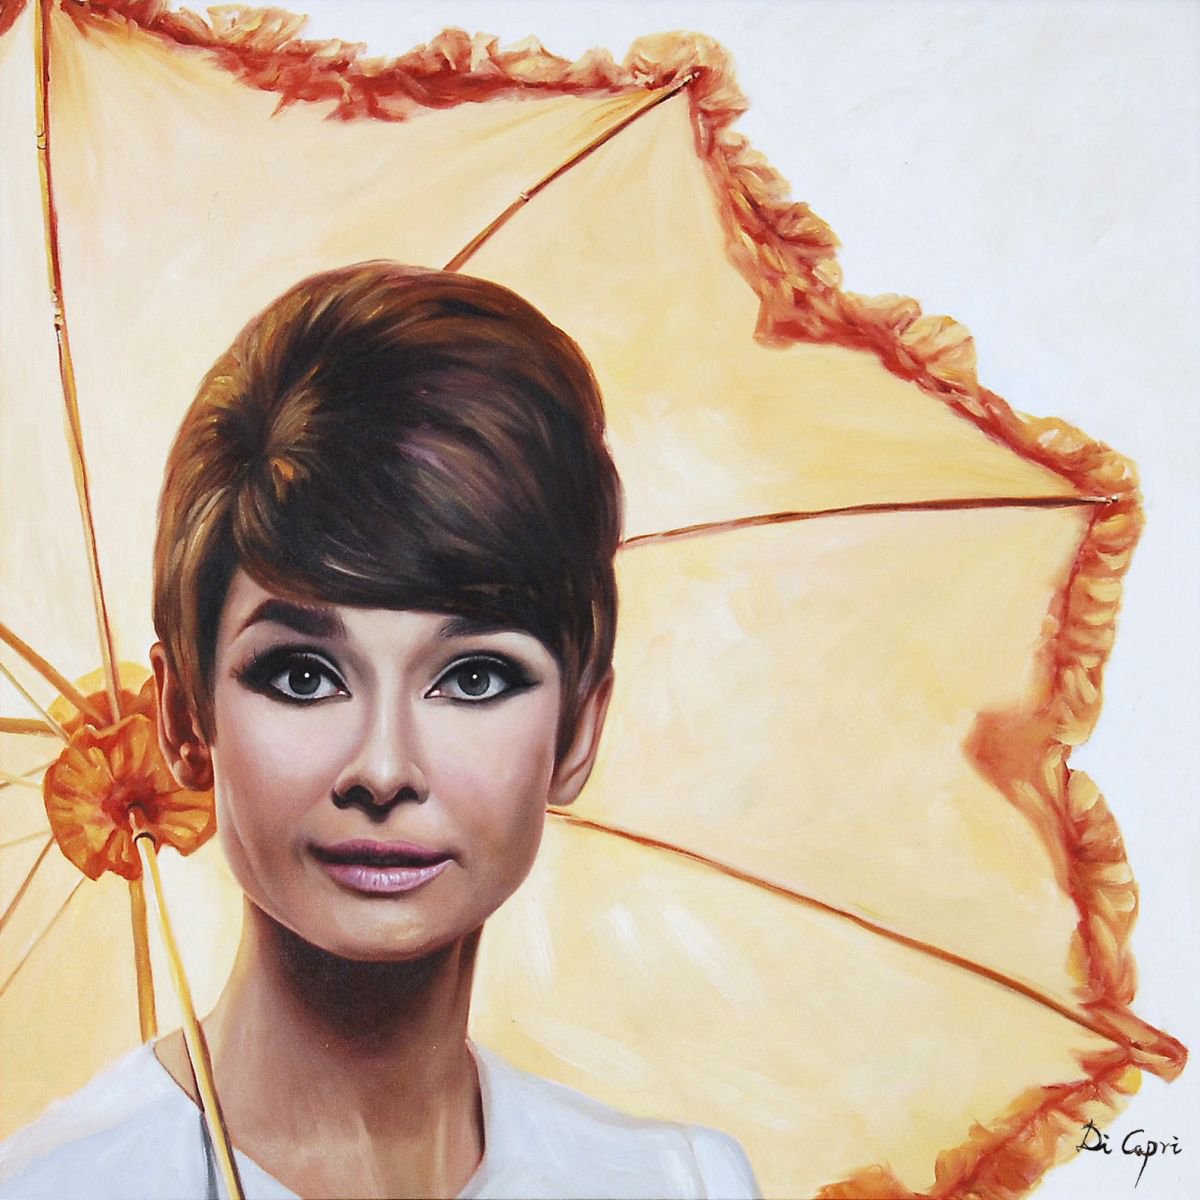 Audrey Hepburn Portrait " Audrey Heburn’s 1960s style" by Di Capri